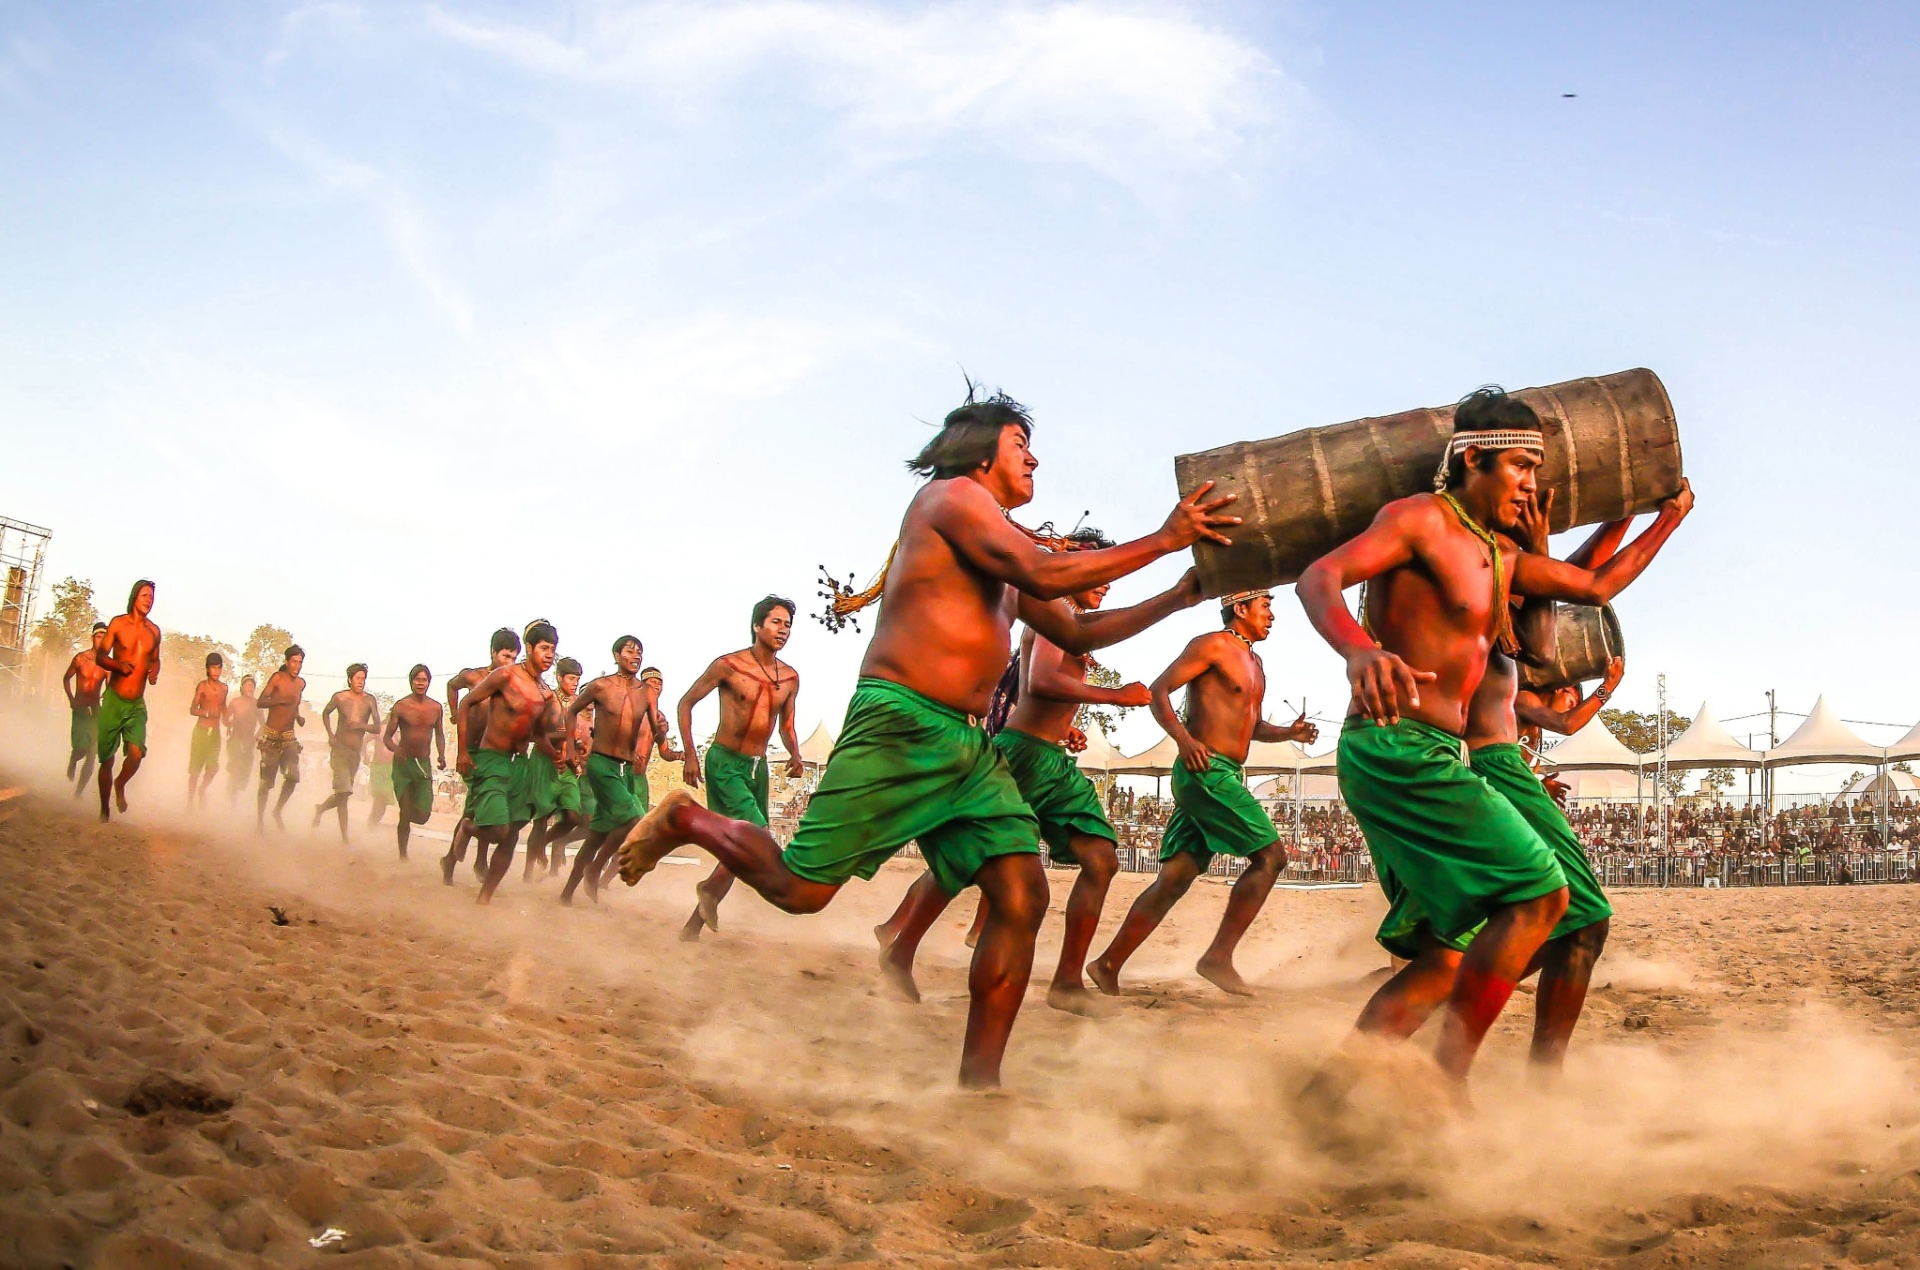 Por que agosto é um mês importante para os povos indígenas no Brasil? -  04/08/2022 - UOL ECOA